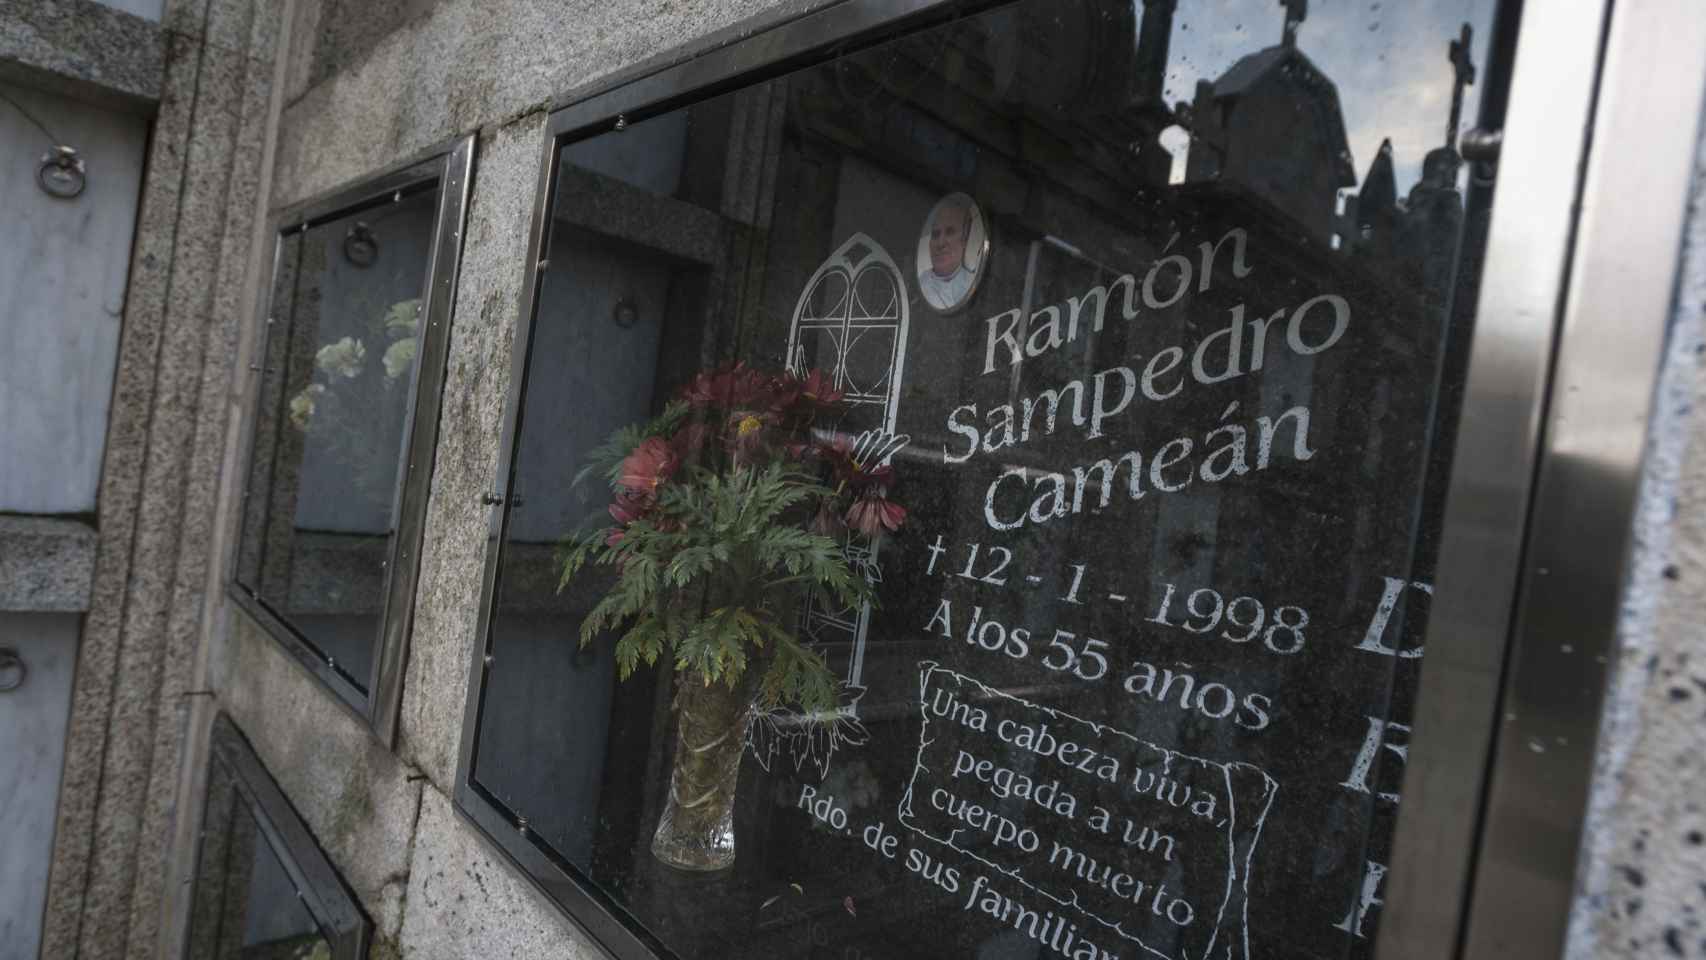 Los restos mortales de Ramón Sampedro descansan desde 1998 en el cementerio de la iglesia de Santa Mariña de Xuño.